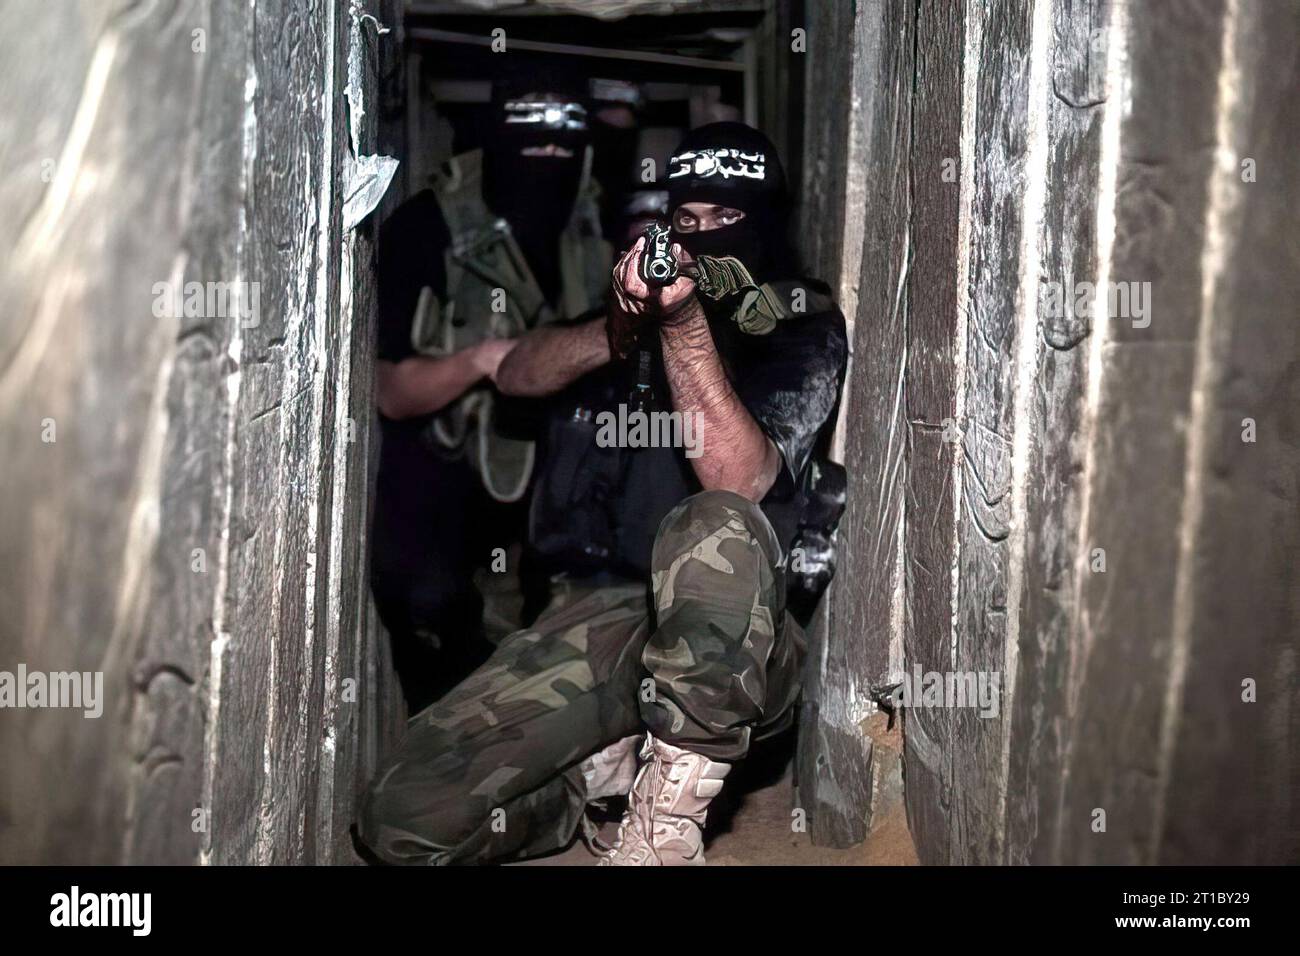 Gaza, Palestina. 13 ottobre 2023. La foto pubblicata da Hamas (movimento di resistenza islamica) mostra le brigate di al Qassam che si allenano su varie armi all'interno della Striscia di Gaza in una data sconosciuta. Foto di Balkis Press/ABACAPRESS.COM credito: Abaca Press/Alamy Live News Foto Stock